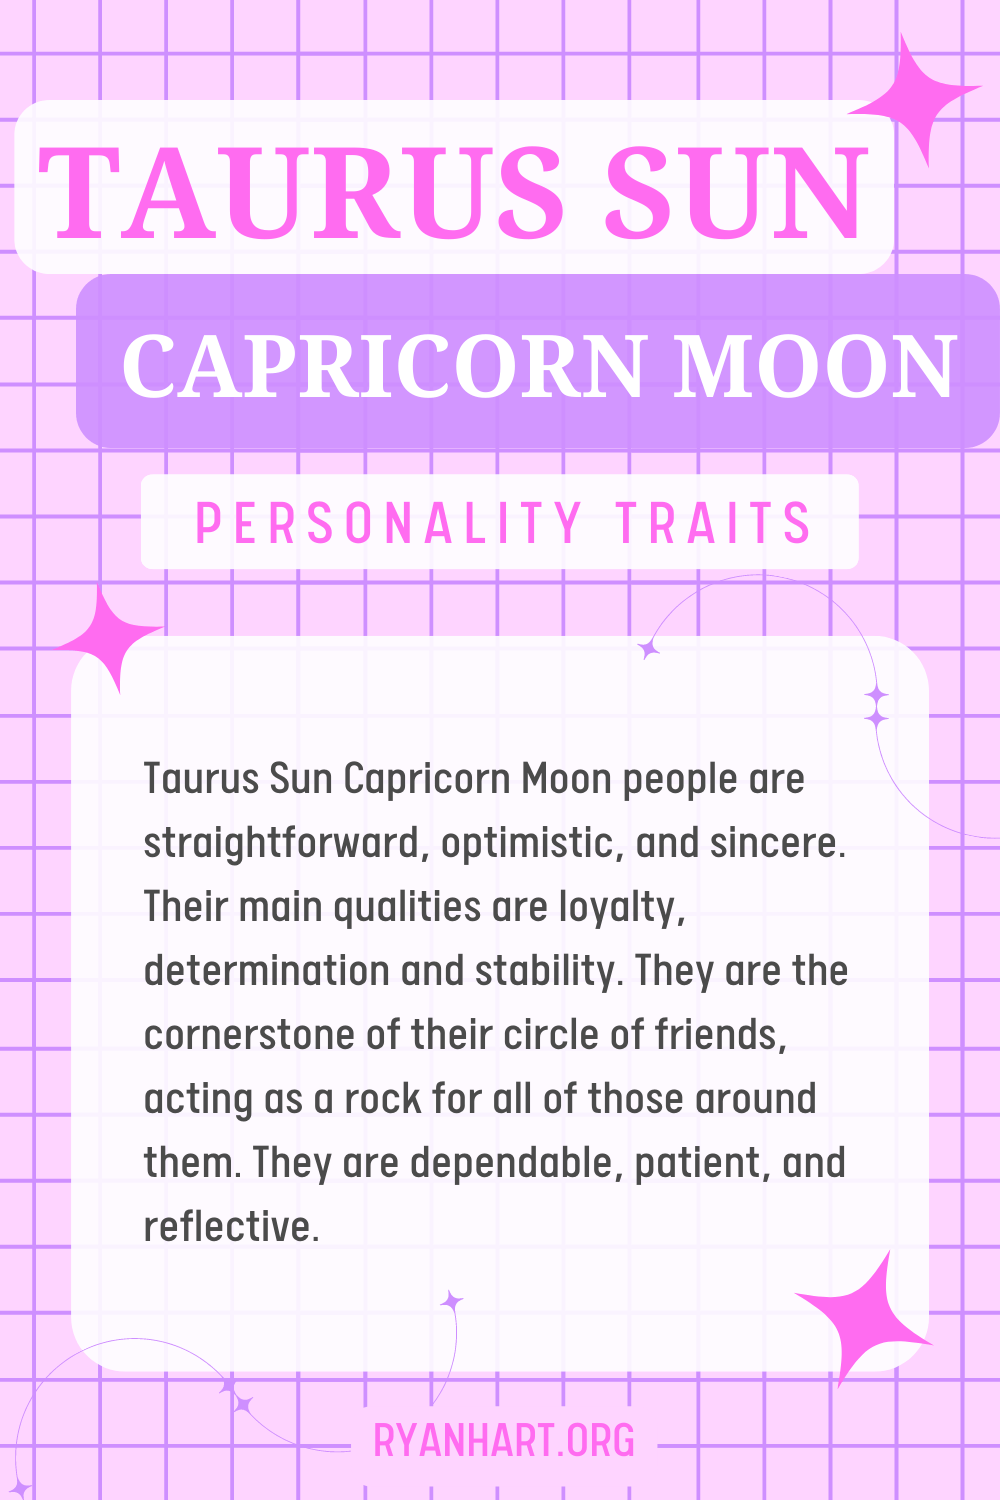  Taurus Sun Capricorn လ စရိုက်လက္ခဏာများ